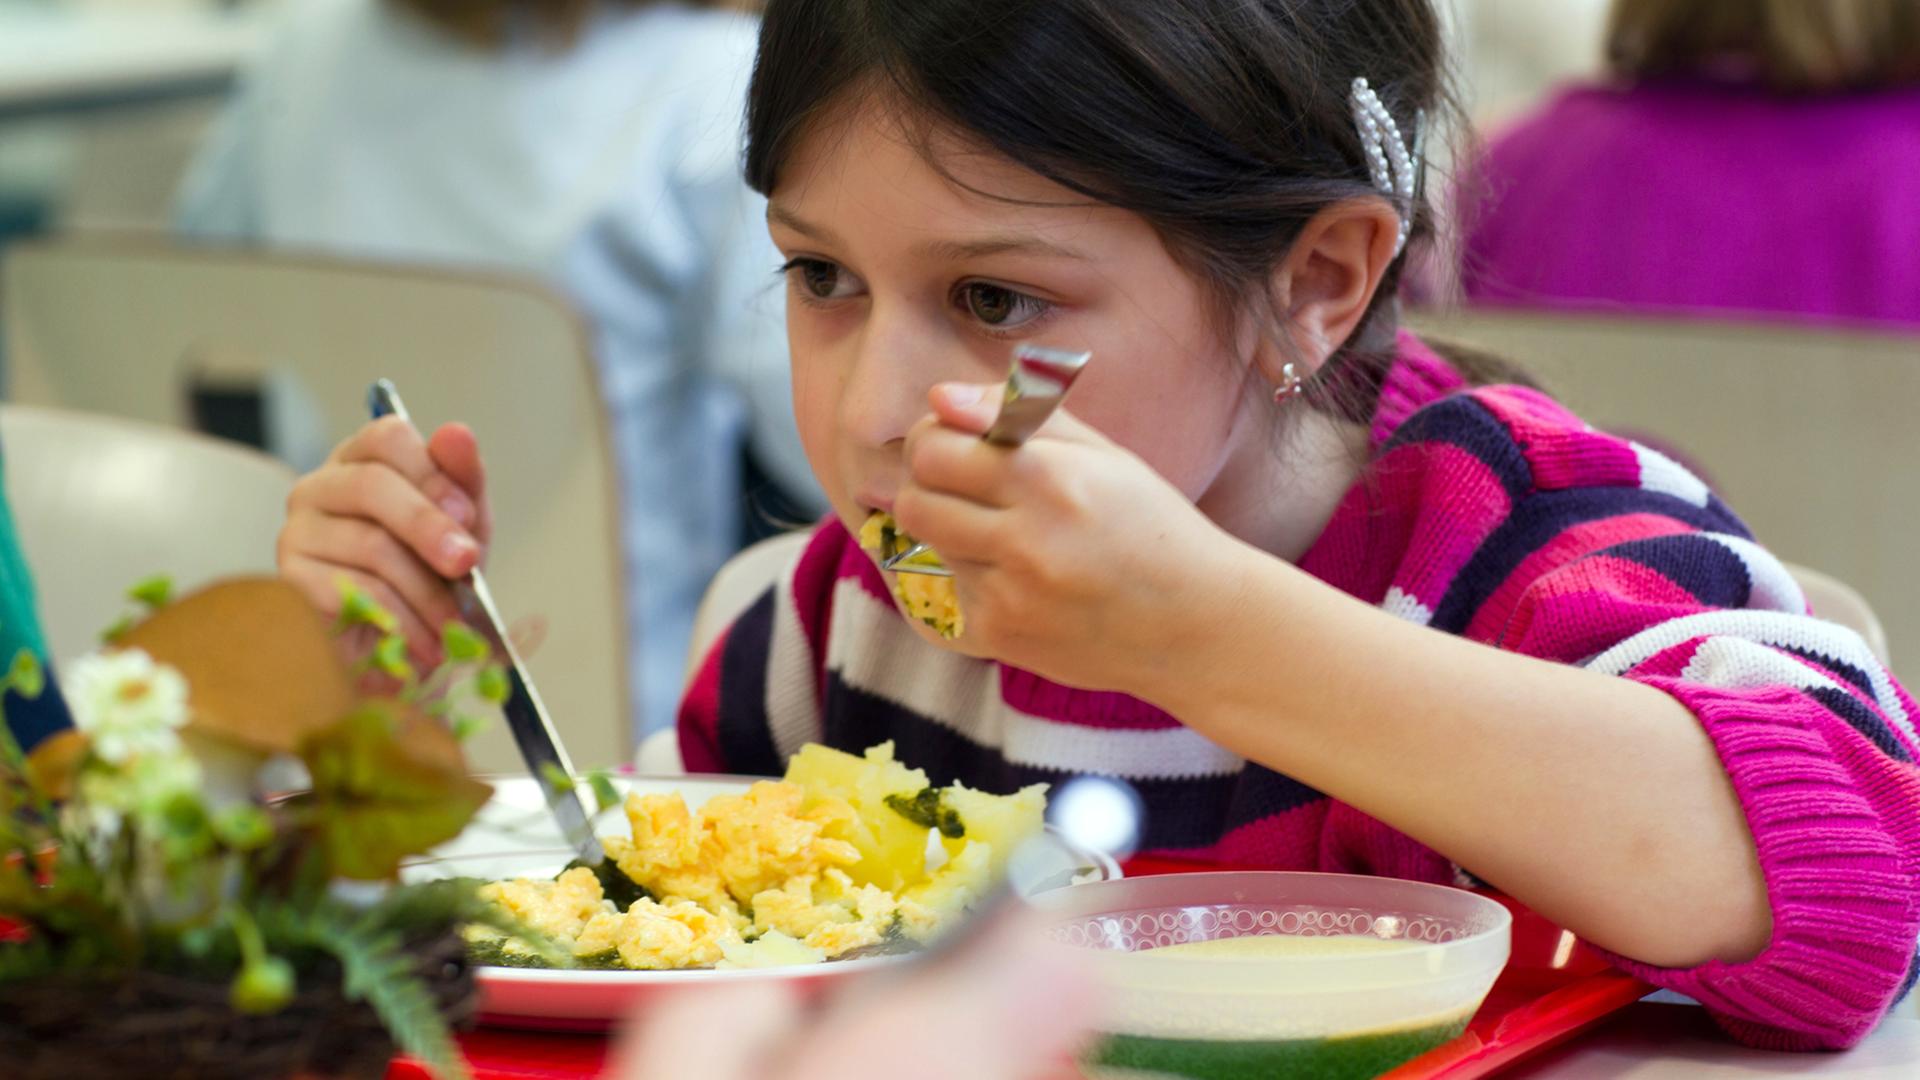 Die siebenjährige Isabelle isst am 15.11.2011 in der Mensa der Regionalen Schule in Zingst ihr Mittagessen.